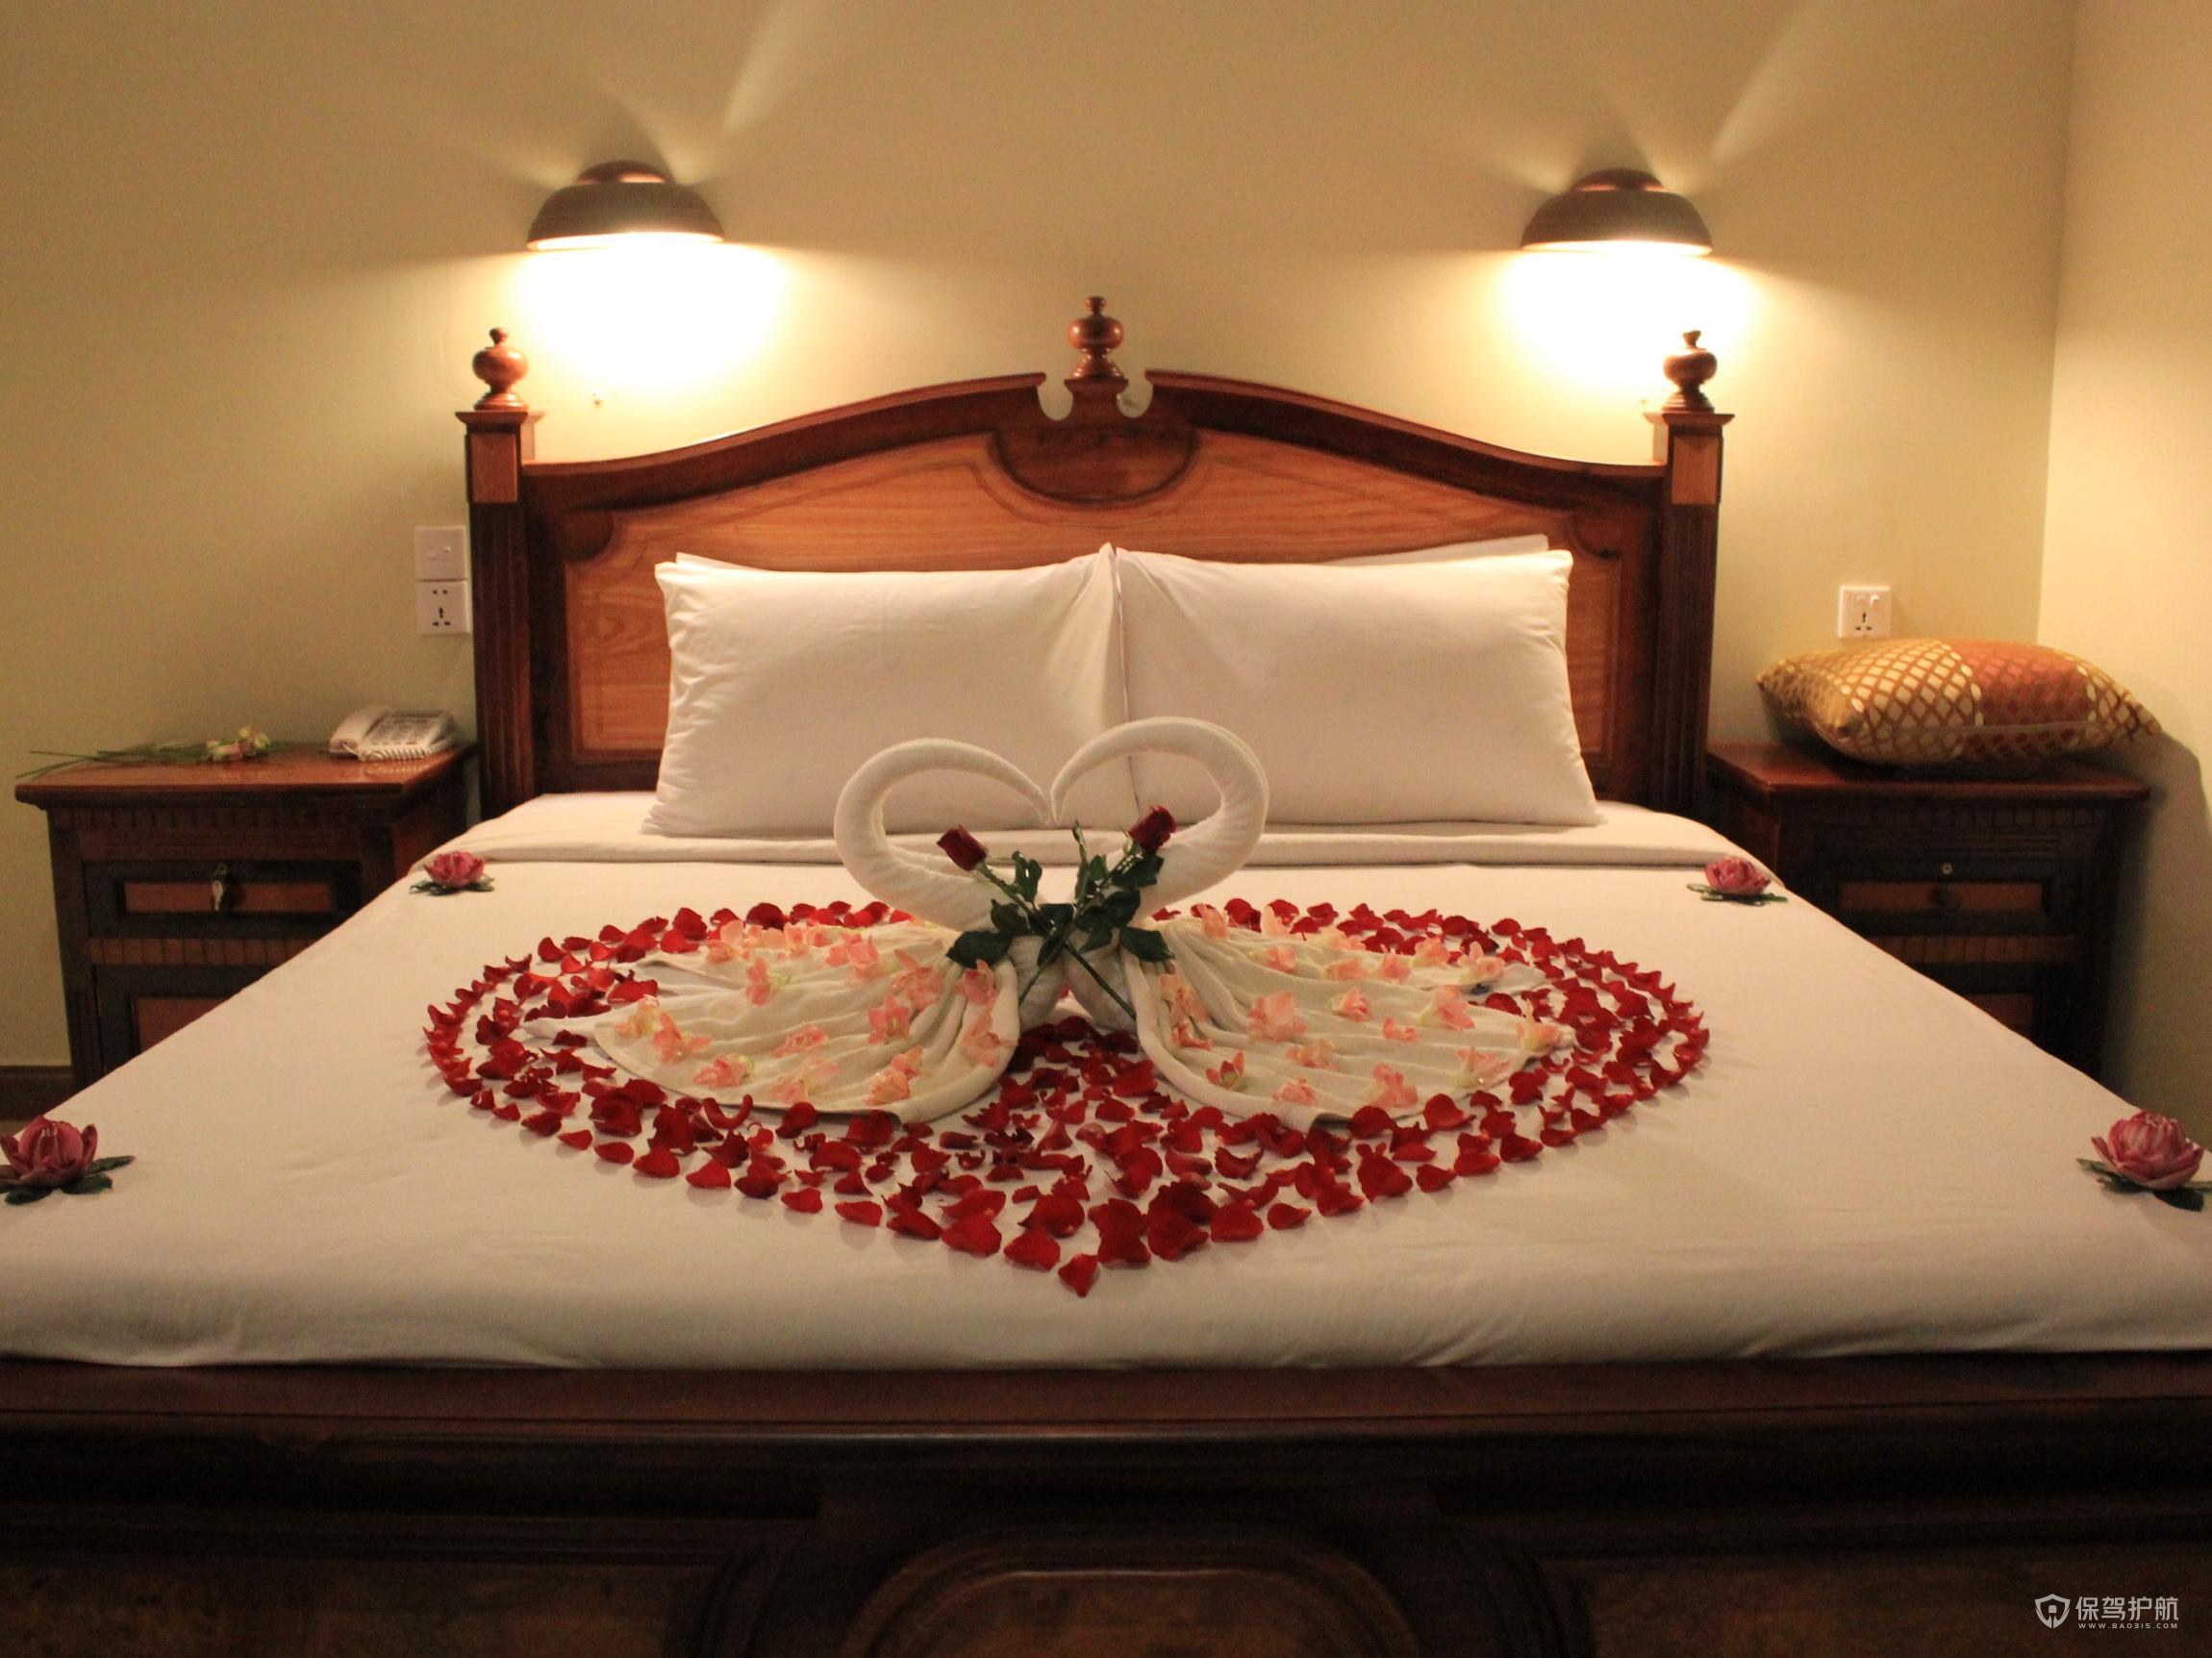 酒店创意客房床上布置技巧 酒店创意客房床上布置图片